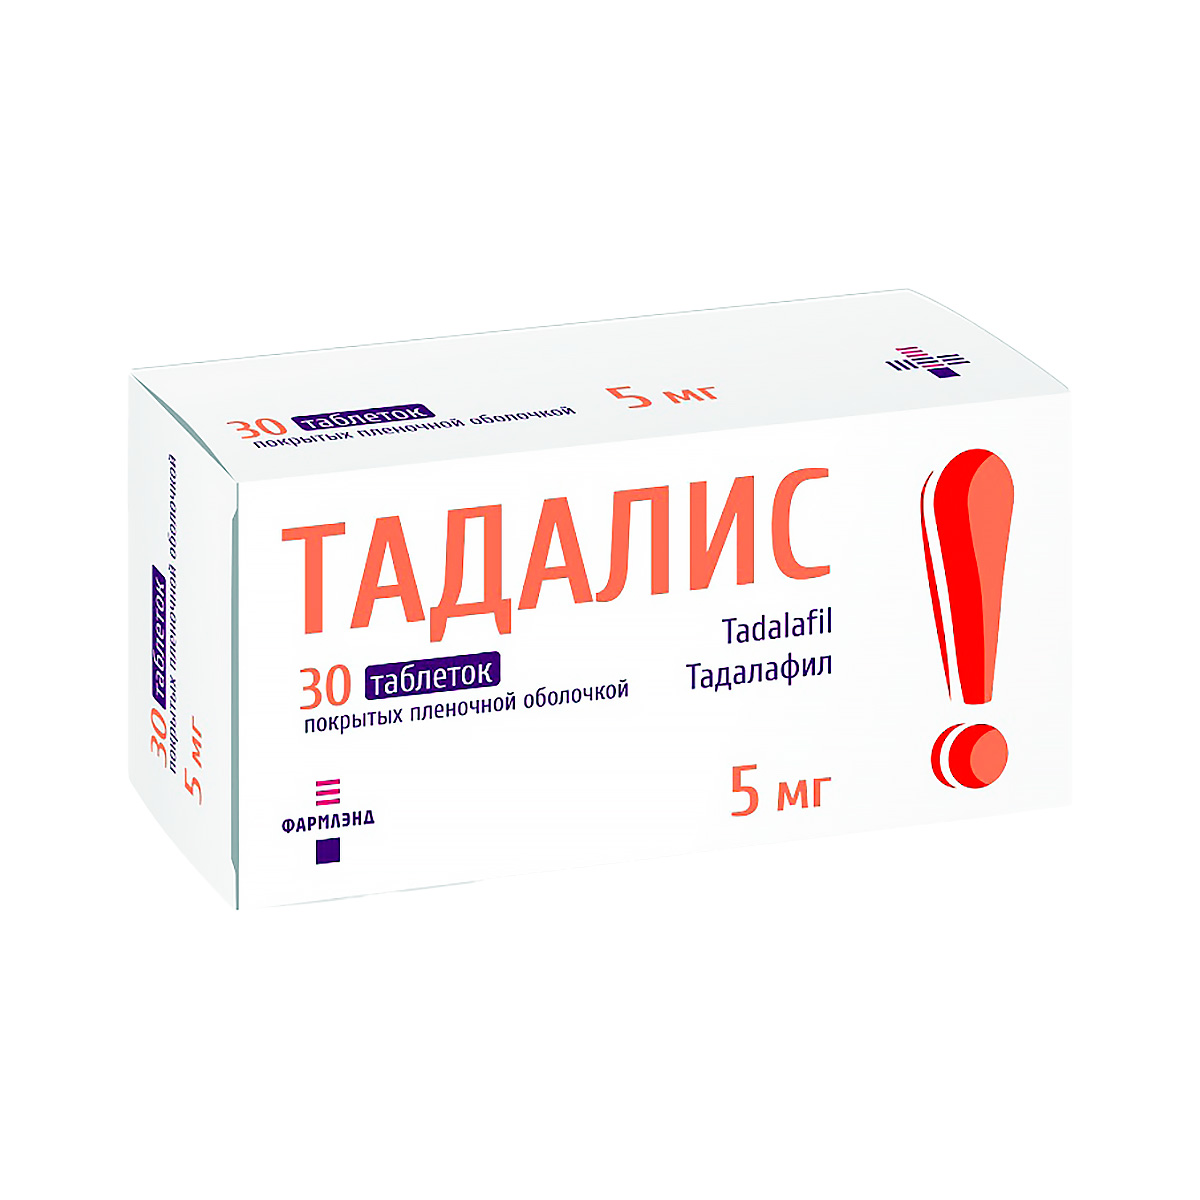 Тадалис 5 мг таблетки покрытые пленочной оболочкой 30 шт